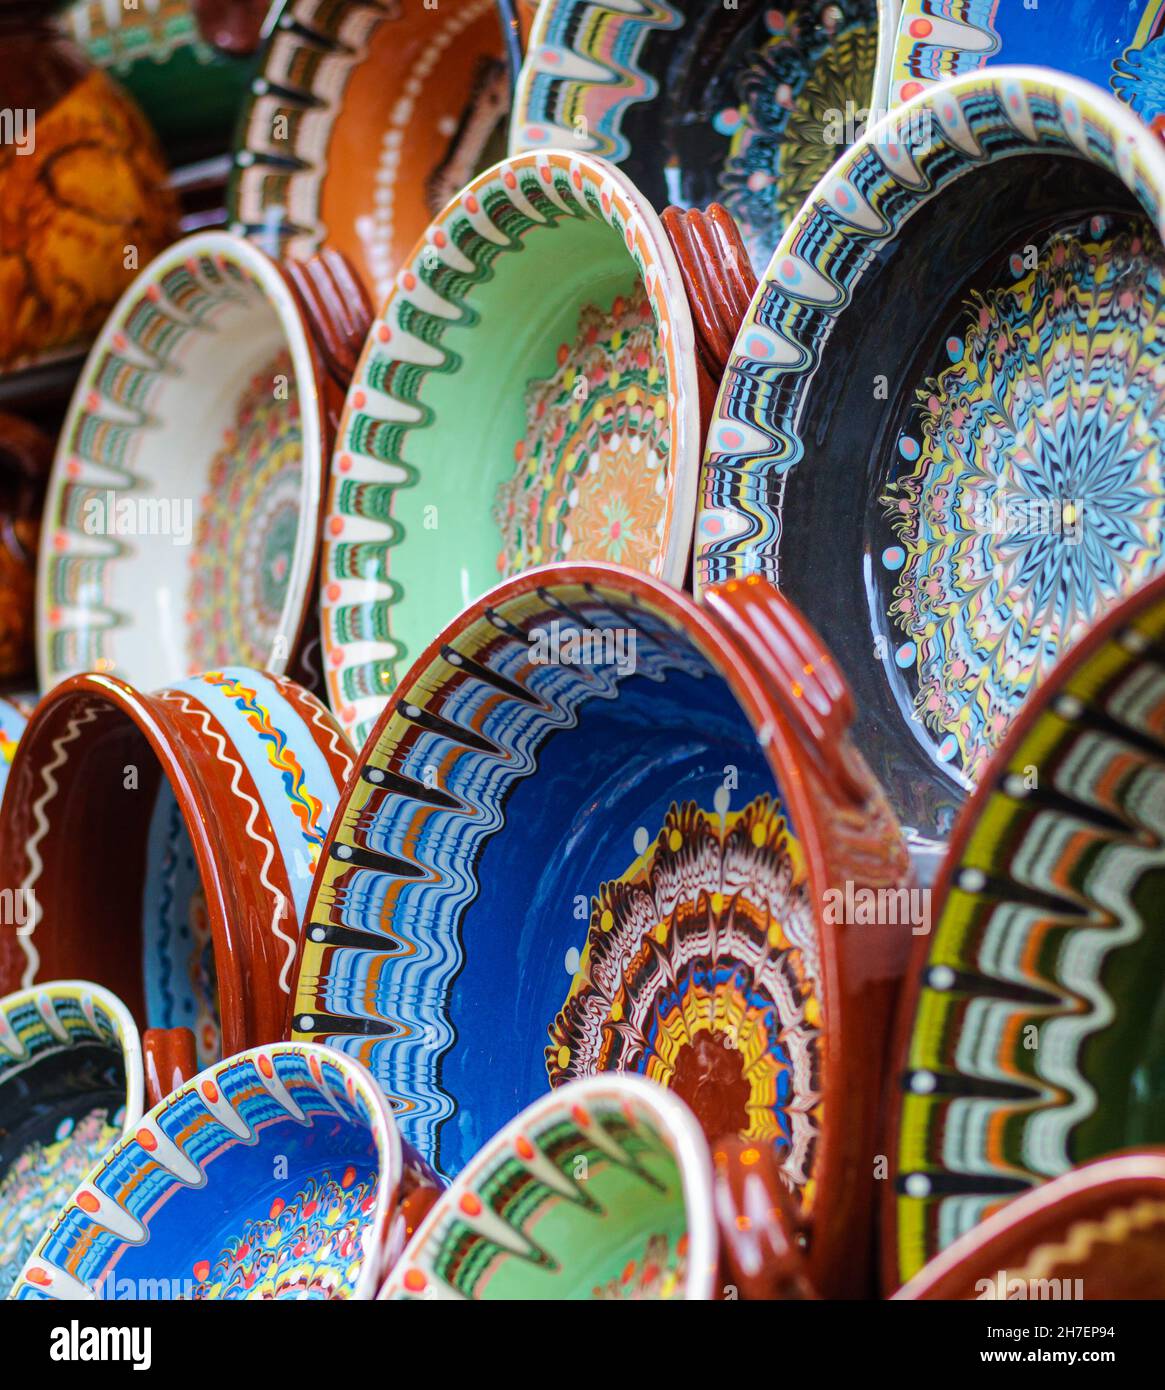 Bemalte bulgarische Keramikgefäße mit traditionellen Motiven, Teller, Schalen, Becher. Handgefertigt aus braunem Ton. Gebackene Glasur bei hoher Temperatur Stockfoto